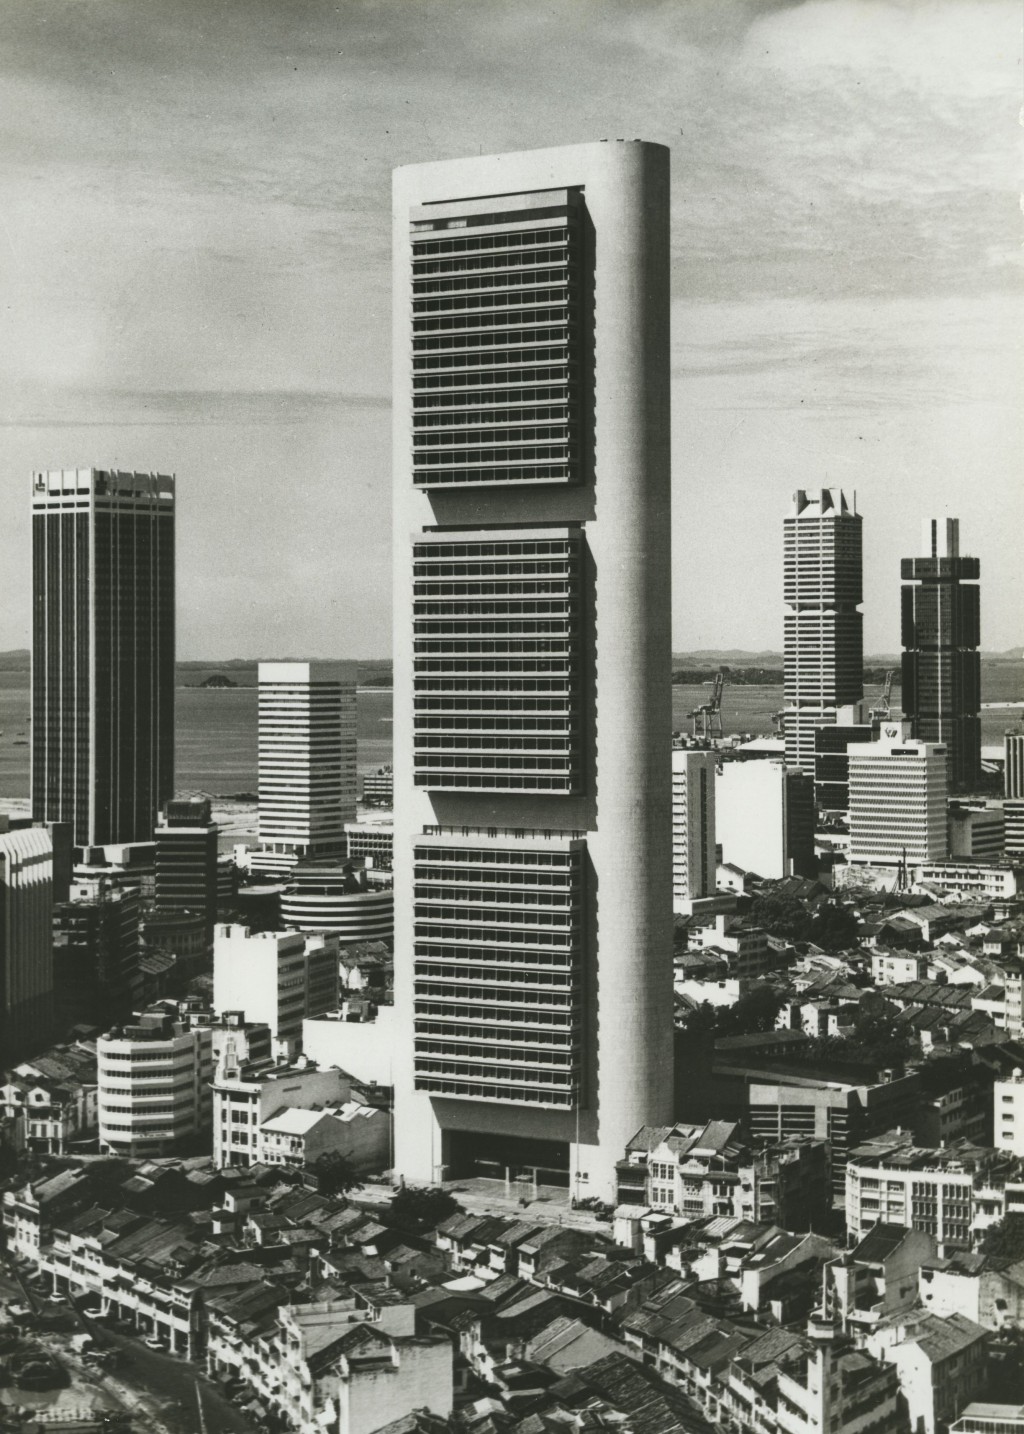 華僑銀行大廈(1970–1976)屹立於新加坡金融 區摩天大樓間一景 約 1976 年 M+,香港 BEP Akitek 捐贈,2019 年 © BEP Akitek